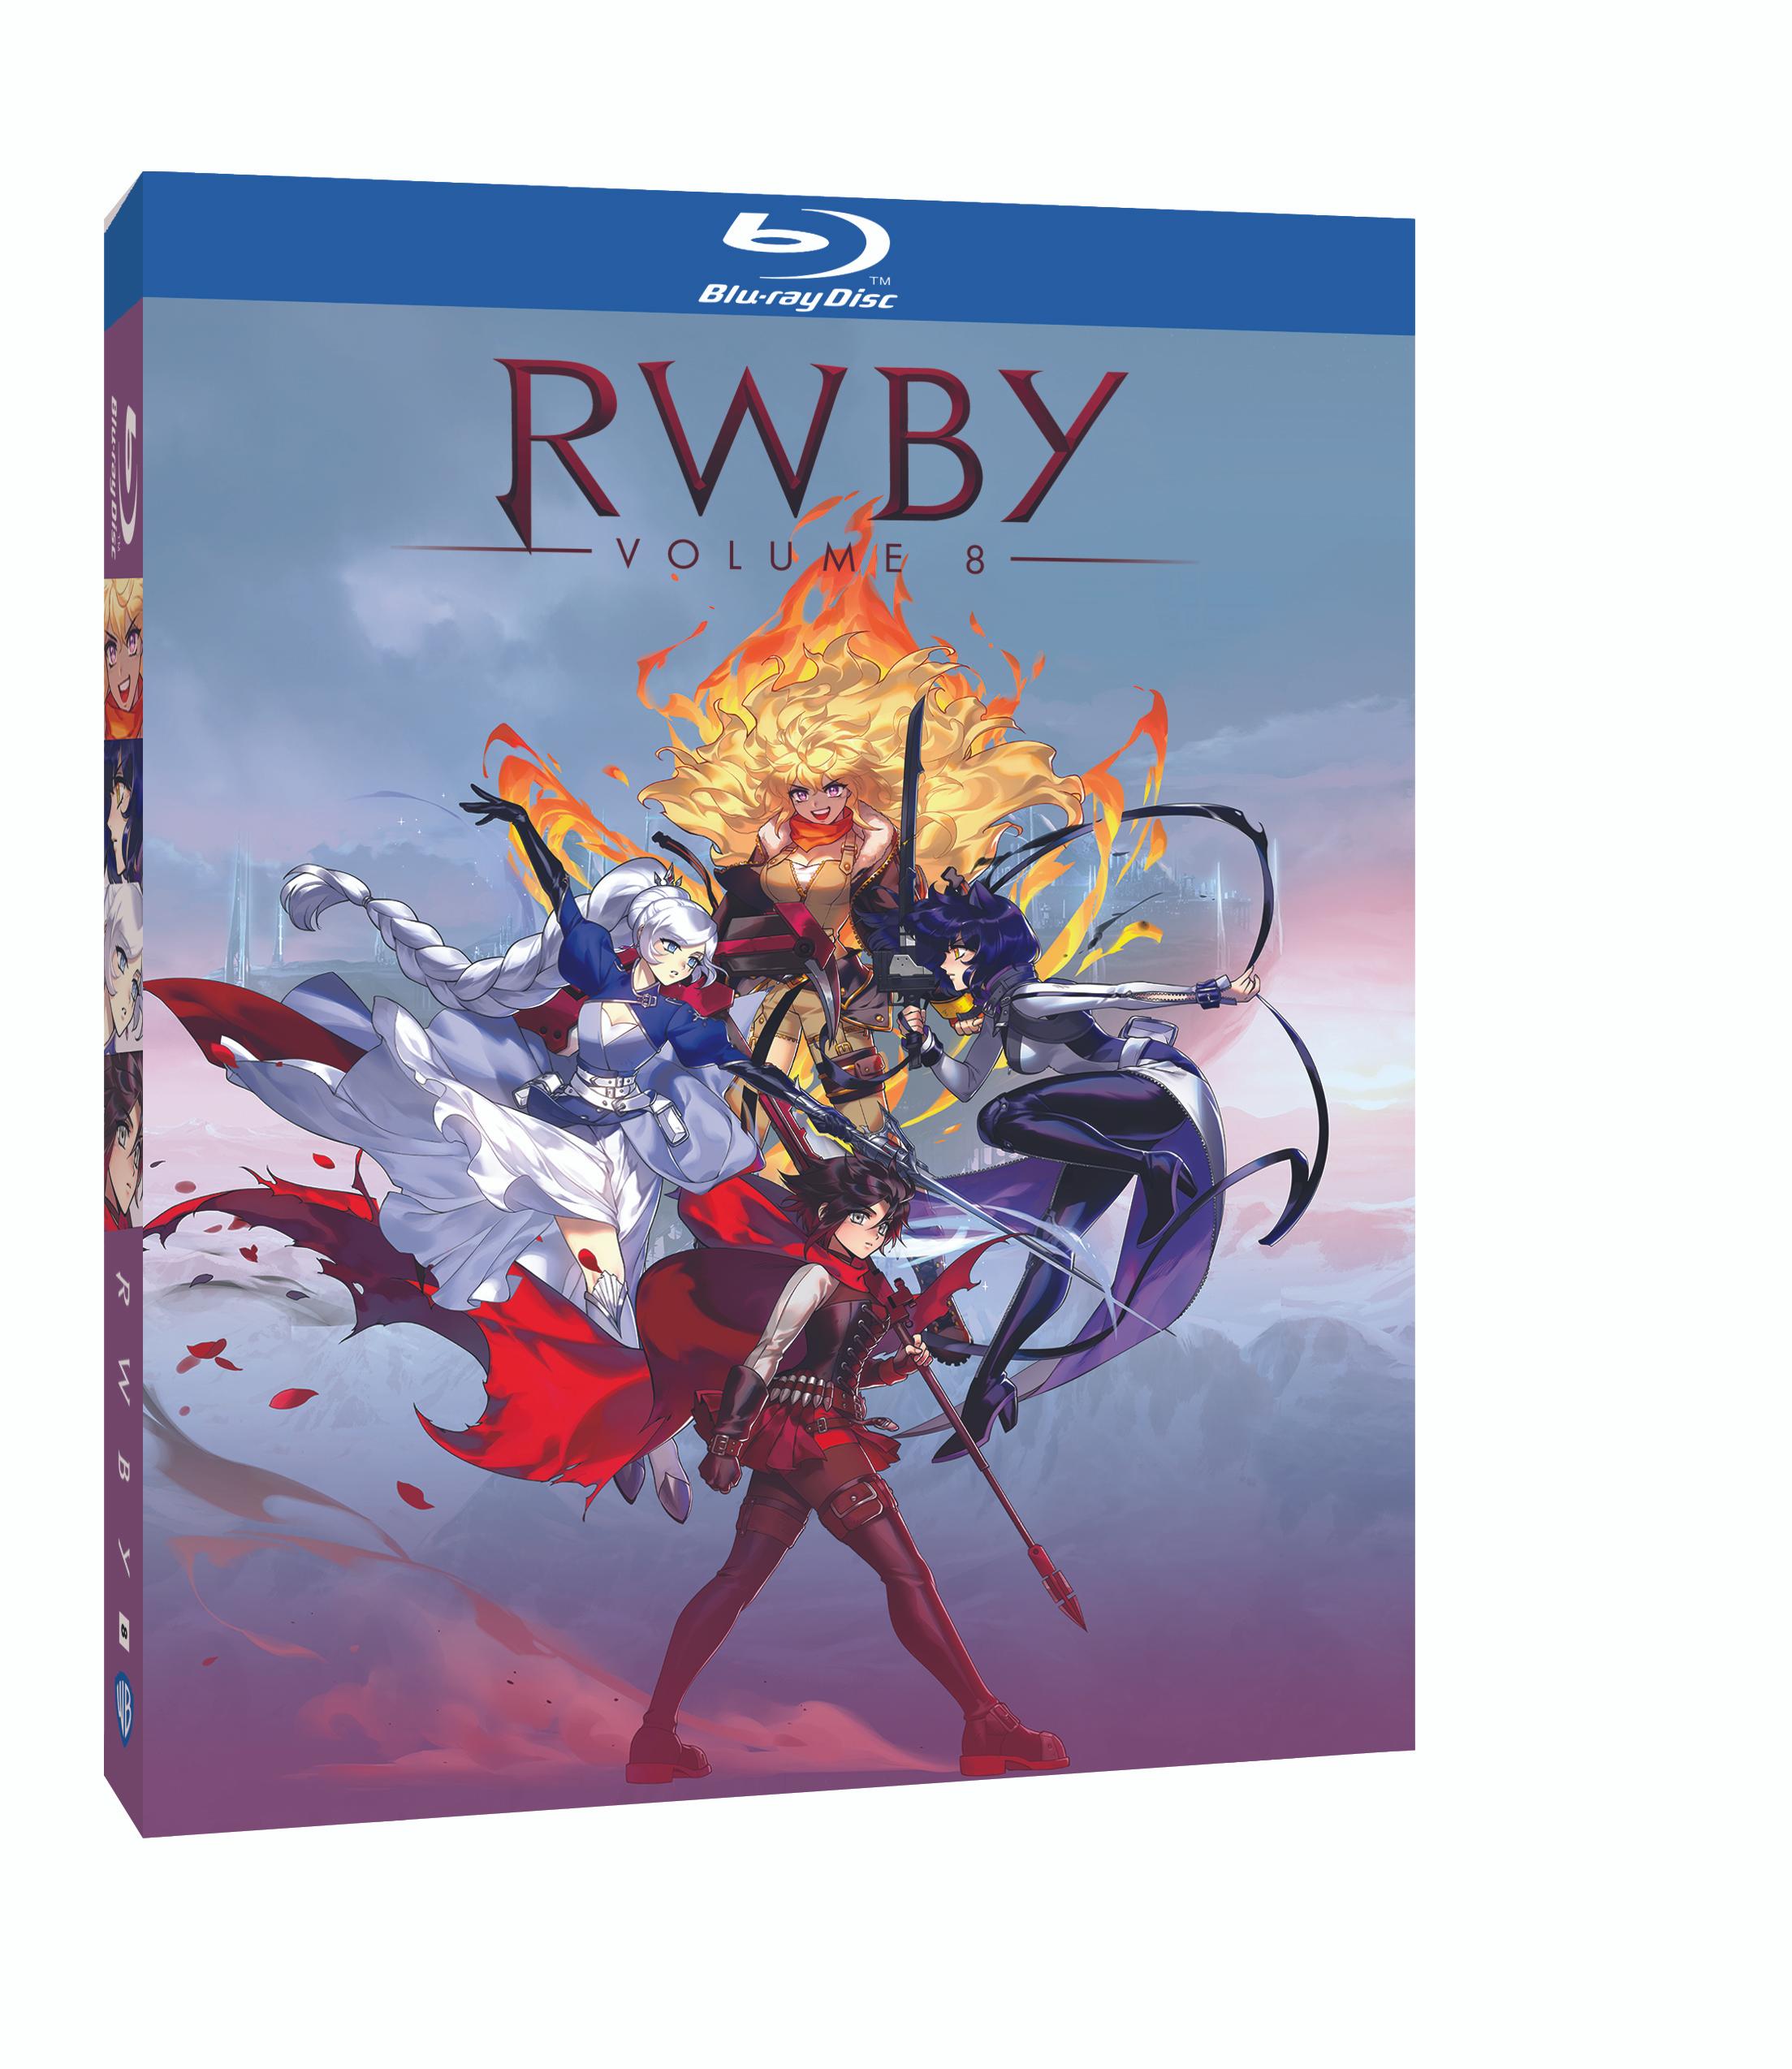 RWBY Volume 8 Blu-ray